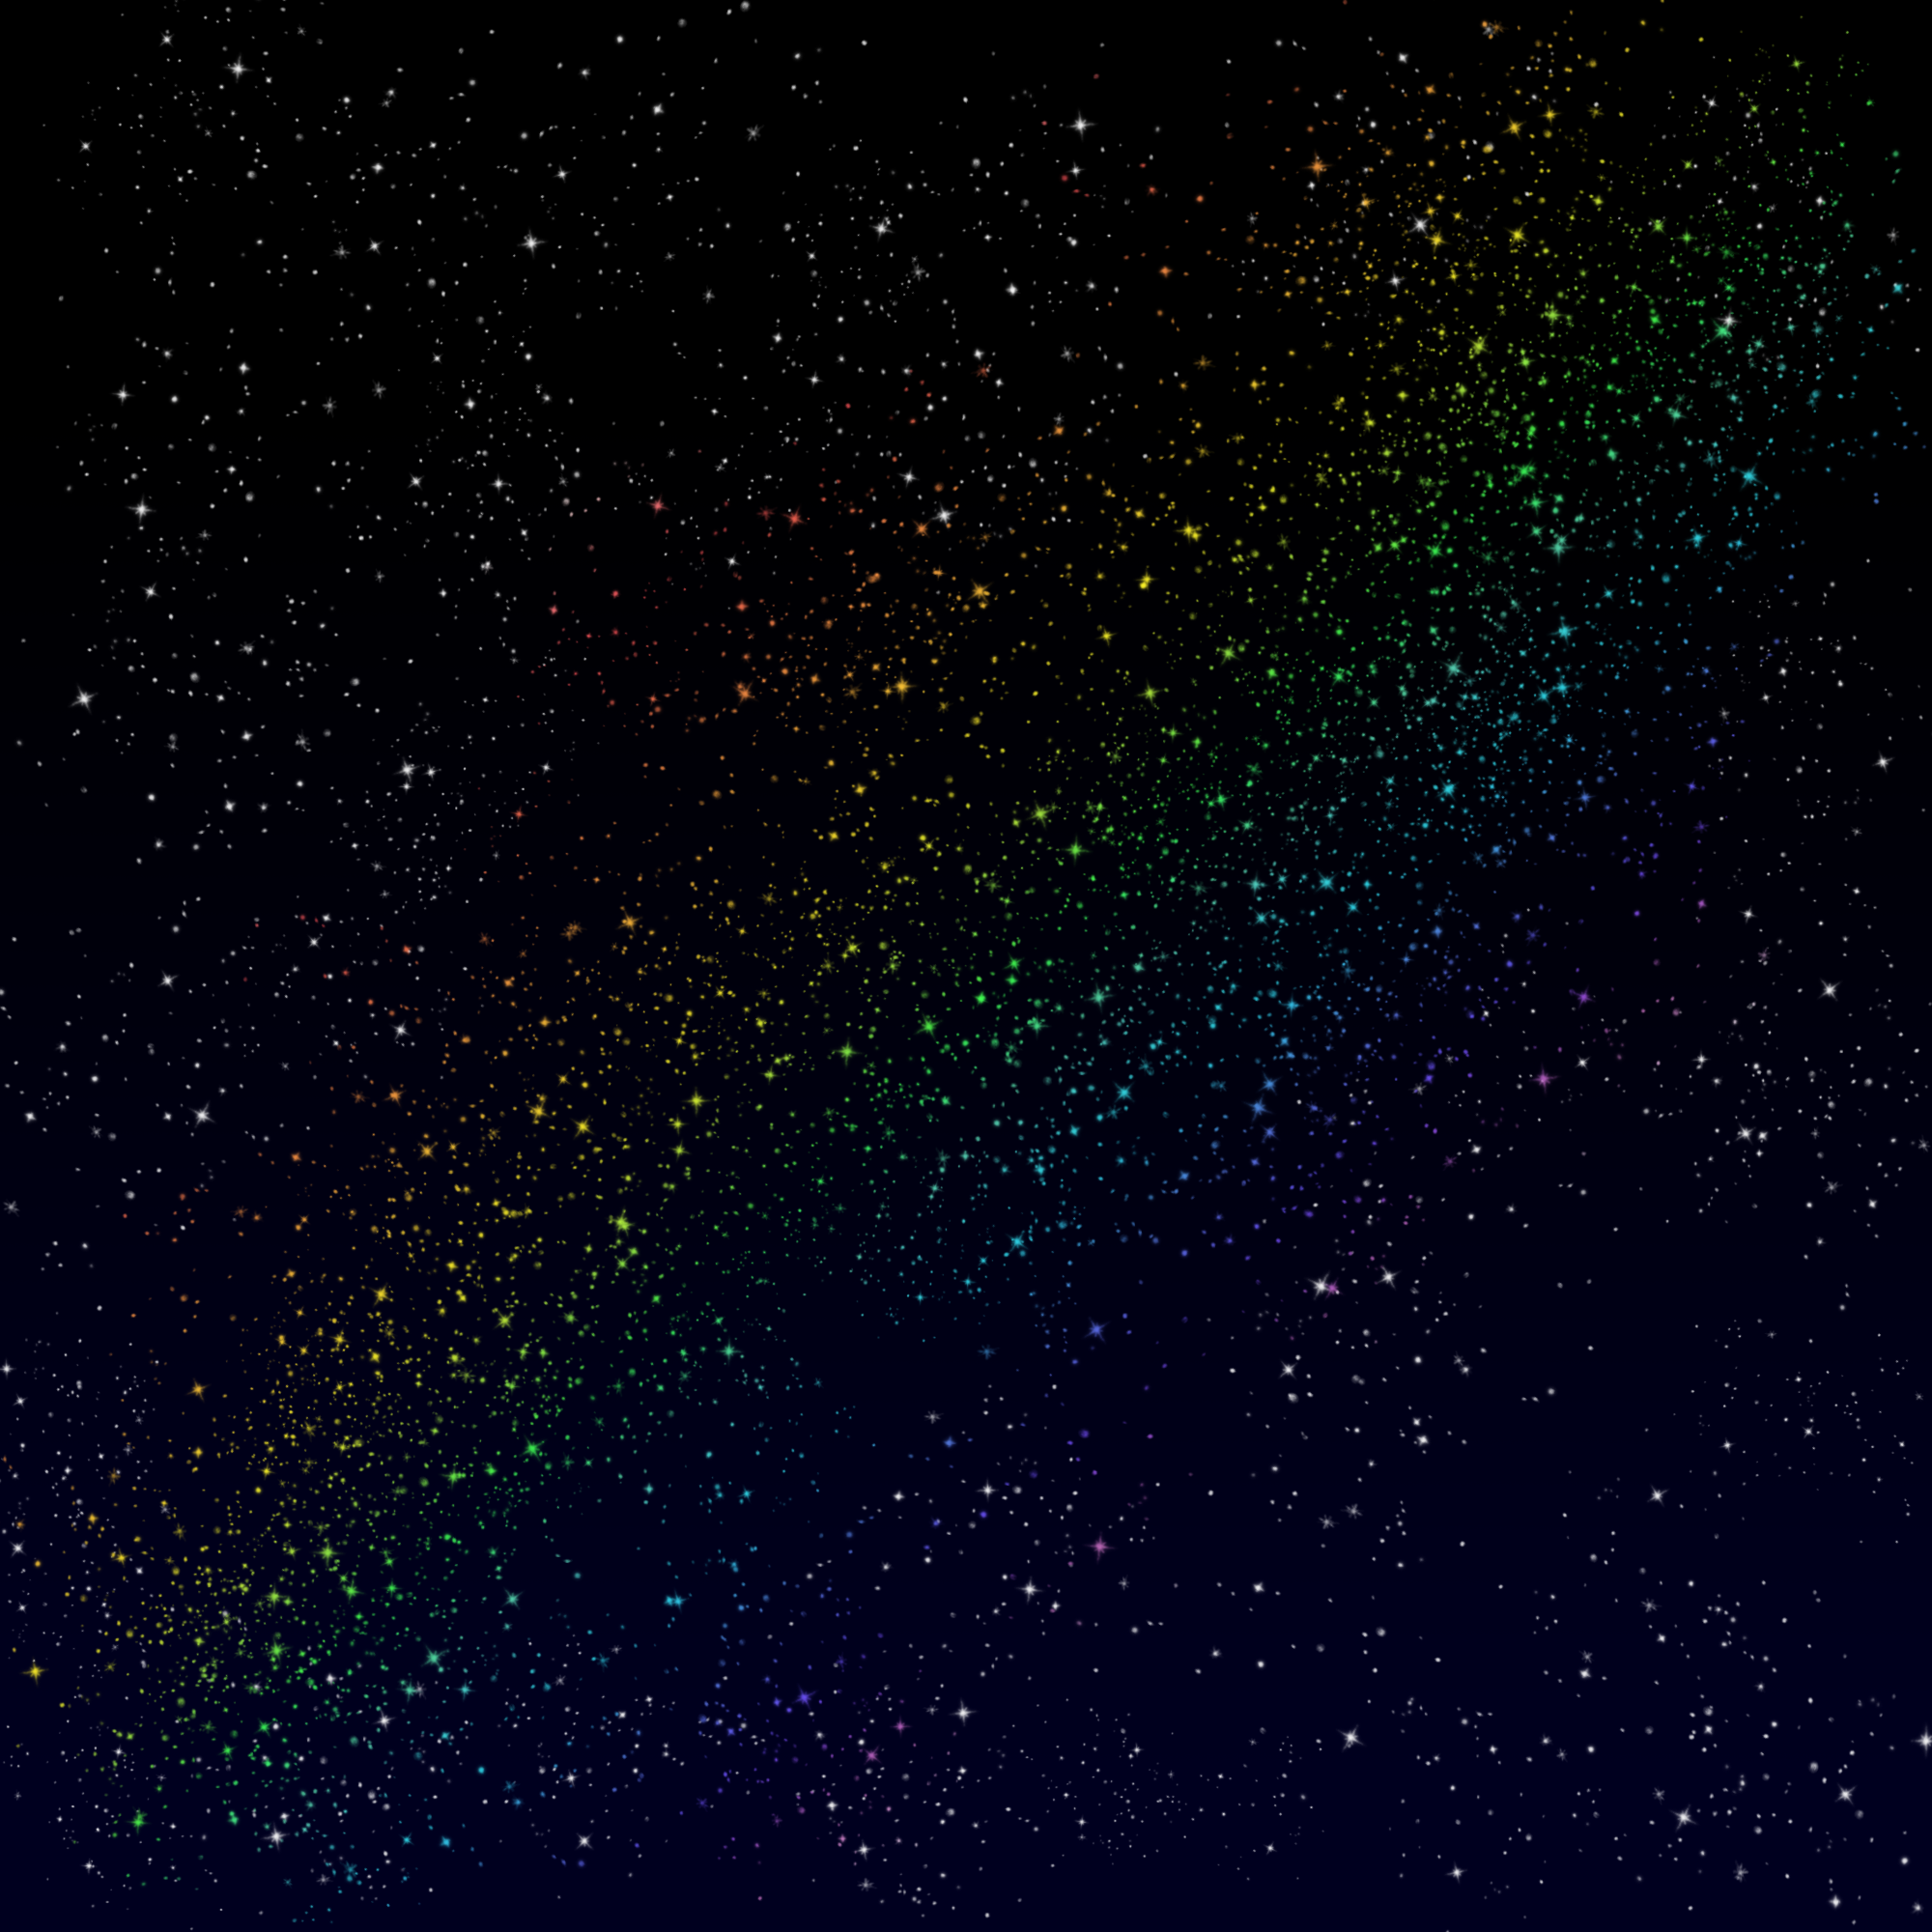 Um fundo degradê entre preto e azul com várias estrelas brancas. Uma faixa diagonal de estrelas está em um degradê arco-íris nas doze cores da bandeira MOGAI (sem contar P/B/cinza), e as estrelas estão mais concentradas nesta região.